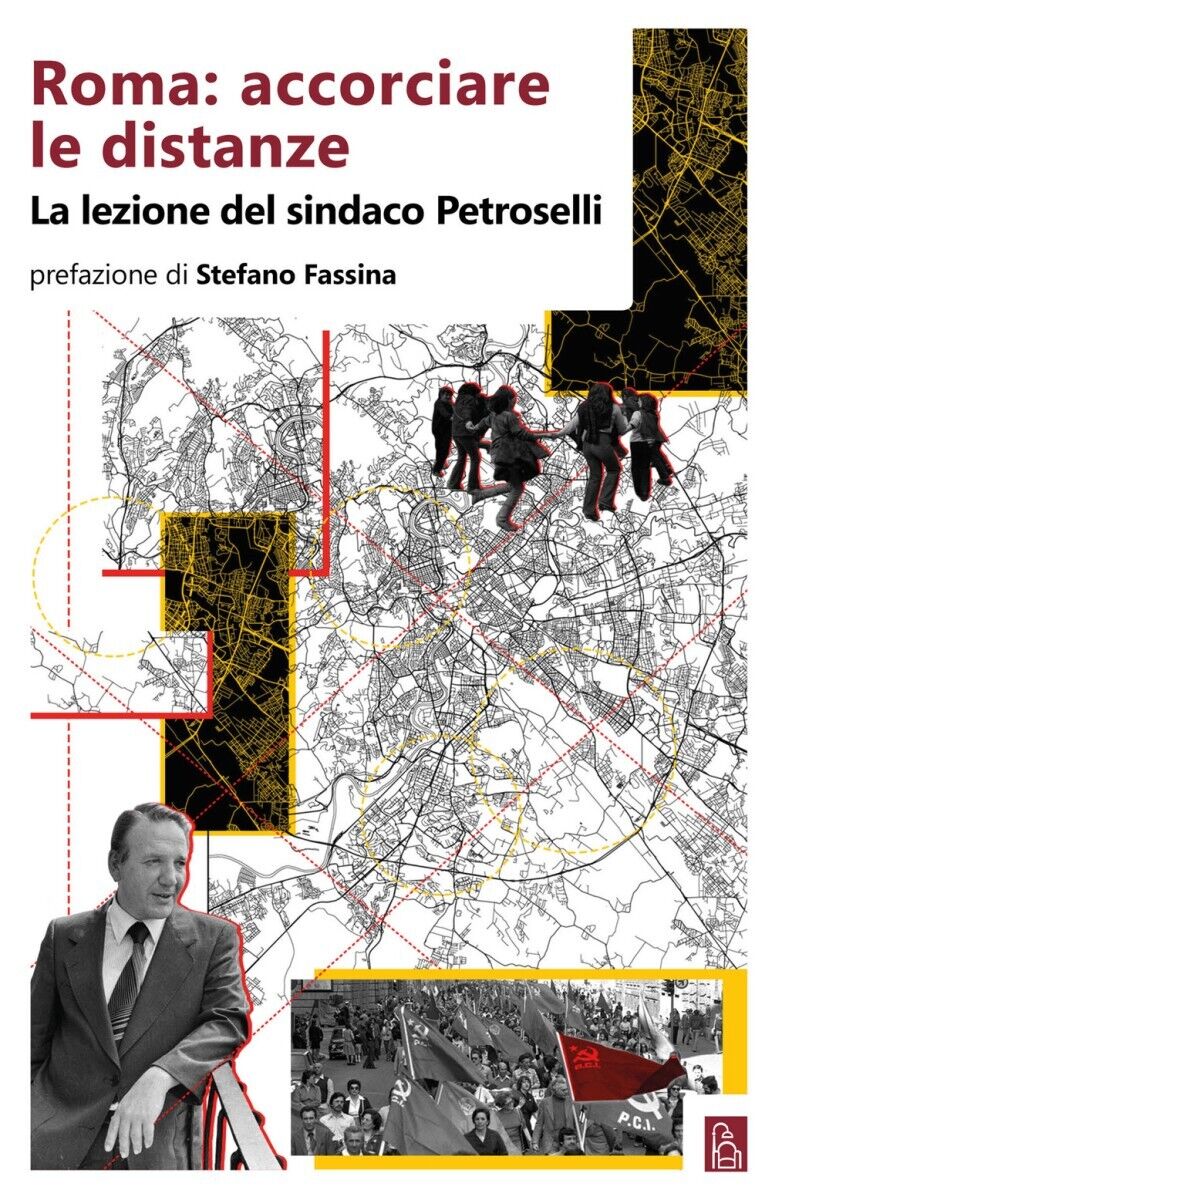 Roma: accorciare le distanze. La lezione del sindaco Petroselli di Aa.vv., 202